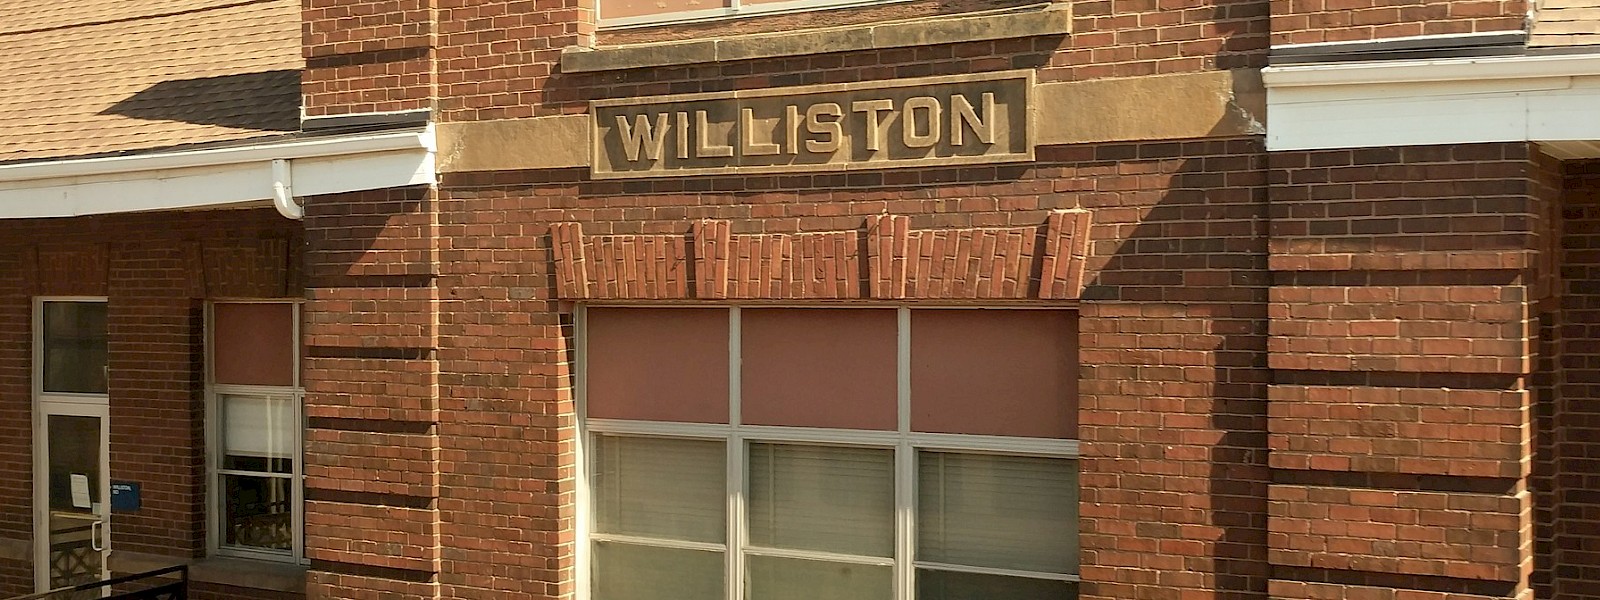 Williston, ND, photo by C. Hamilton